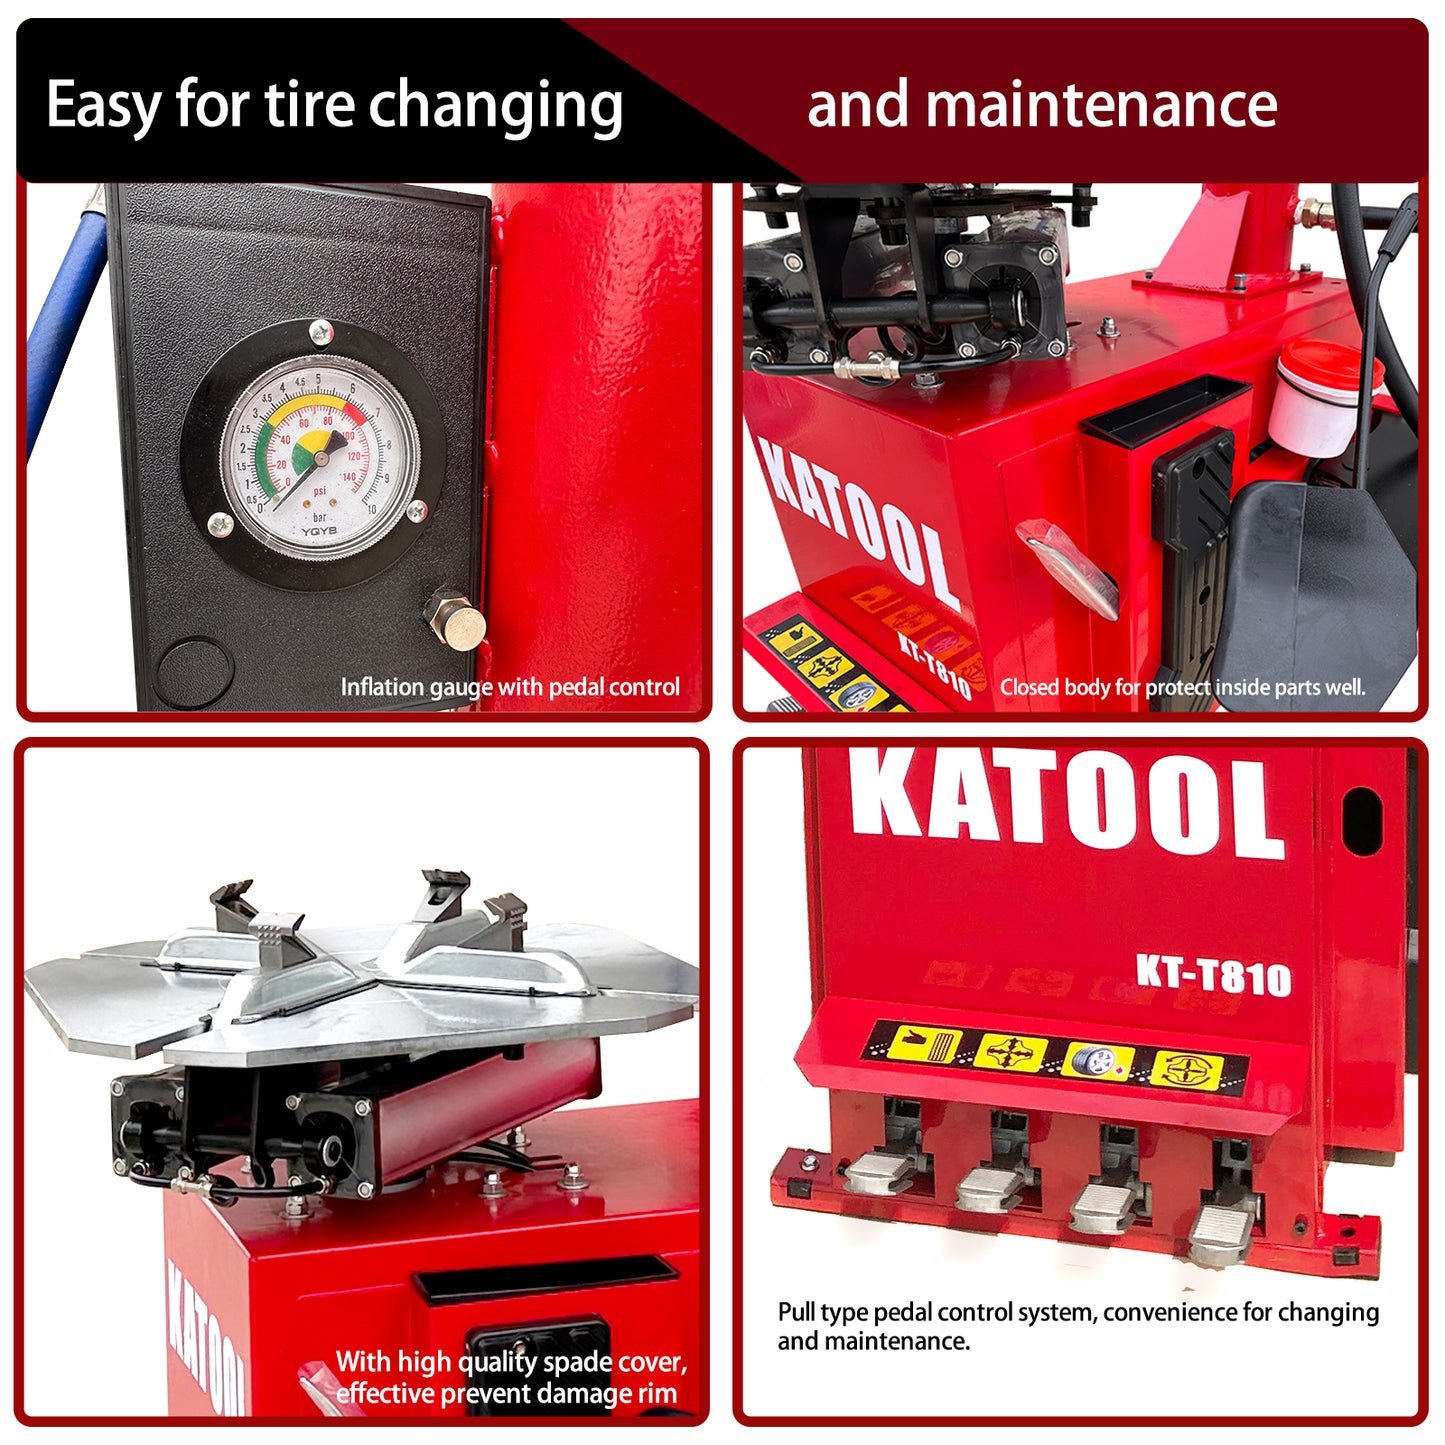 KT-T810 Wheel Clamp Tire Changer Machine